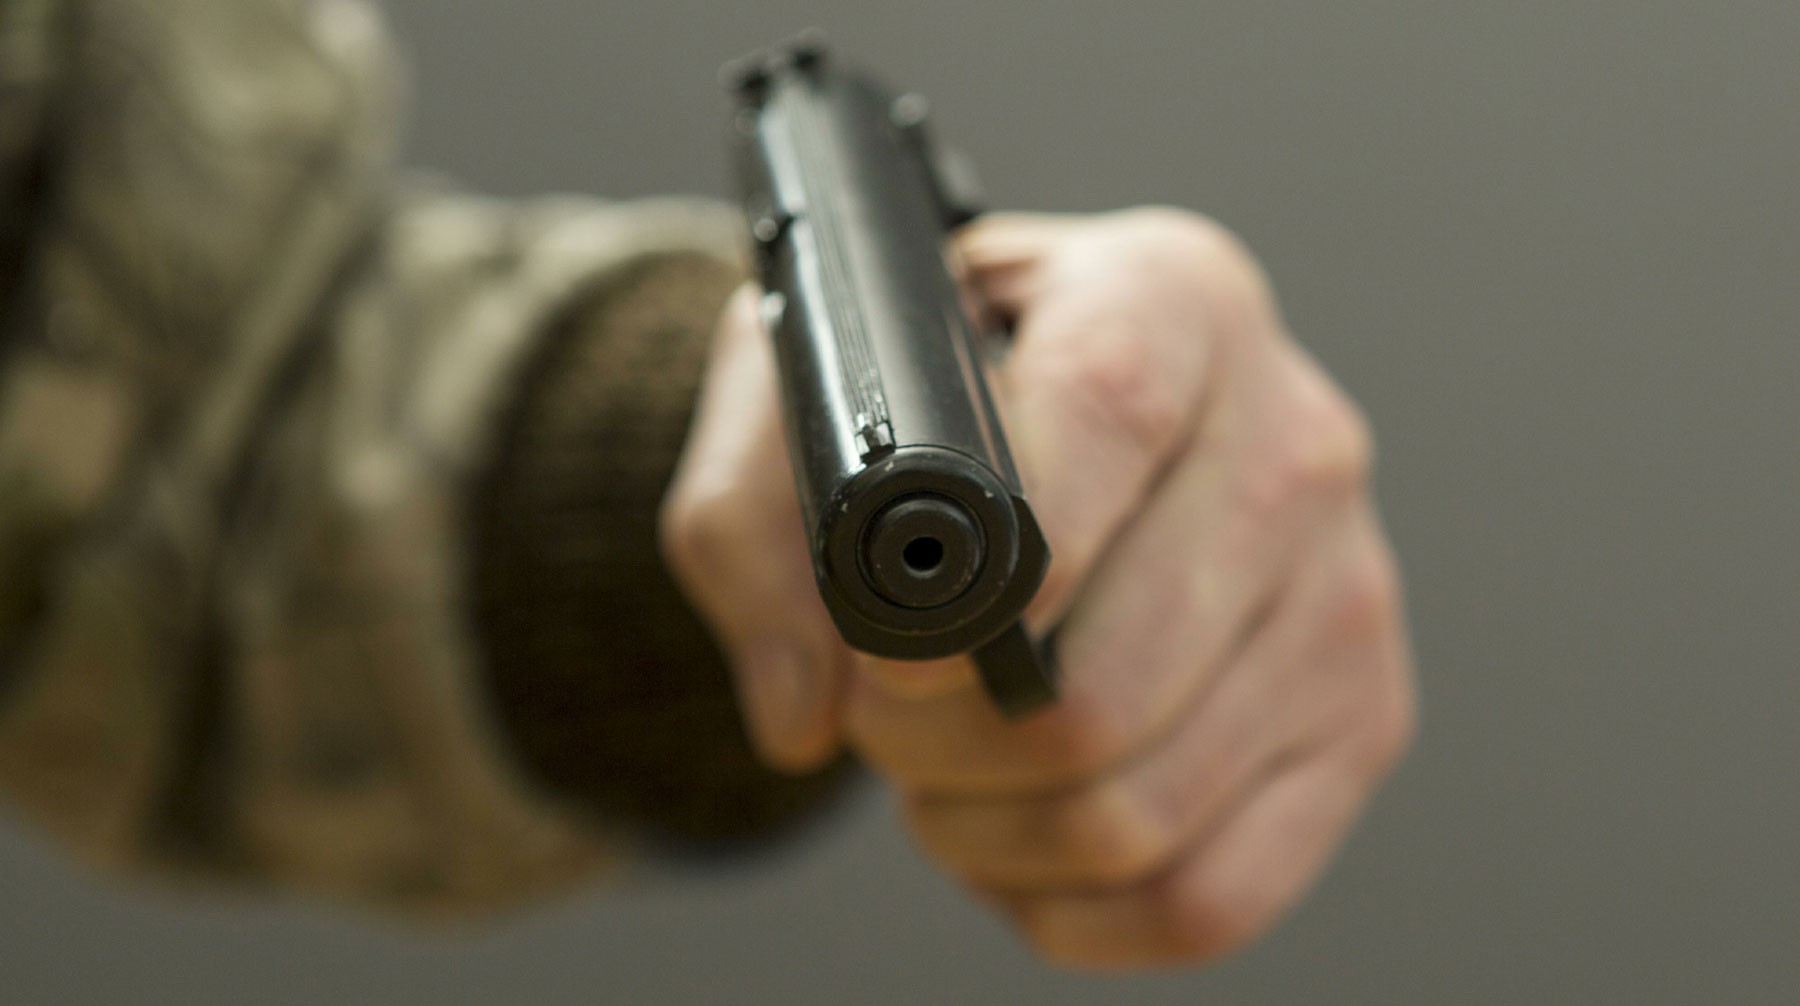 Dailystorm - В одной из лучших школ Казани подросток угрожал учителю ножом и пистолетом